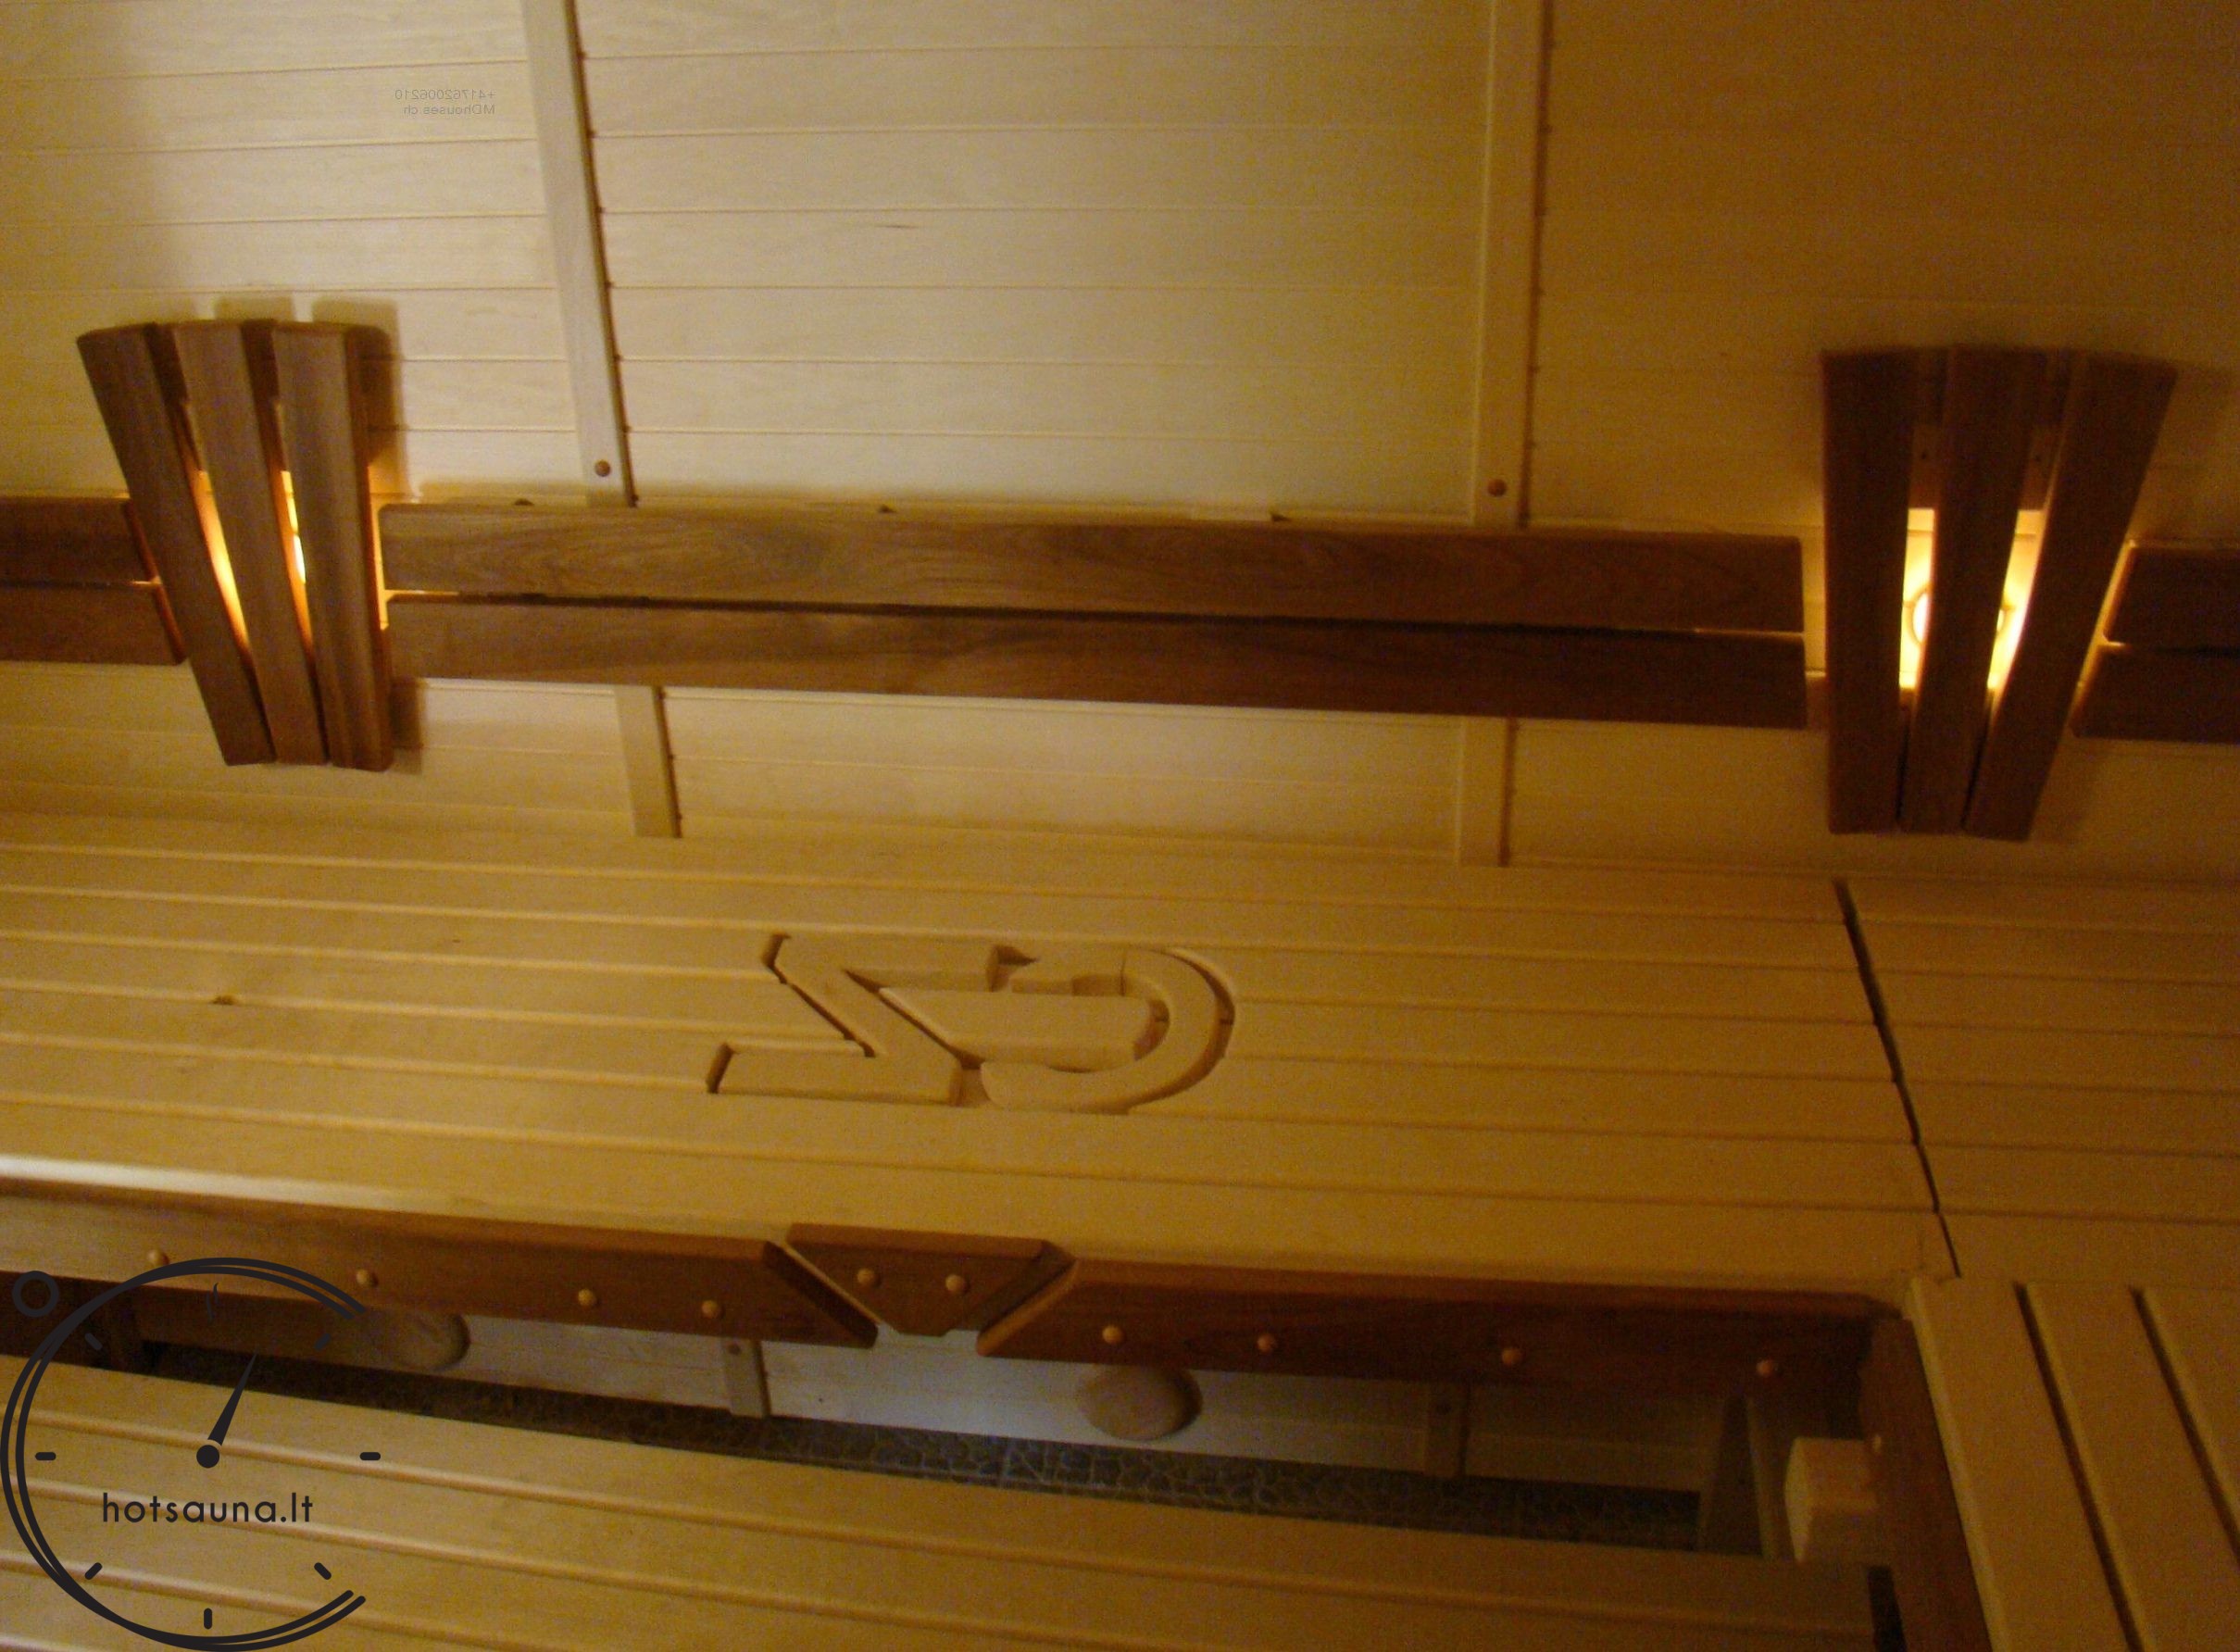 sauna build Log Homes Plane Bauherren Saunen Pavillons Gartenhauser Holz Landschafts (13)